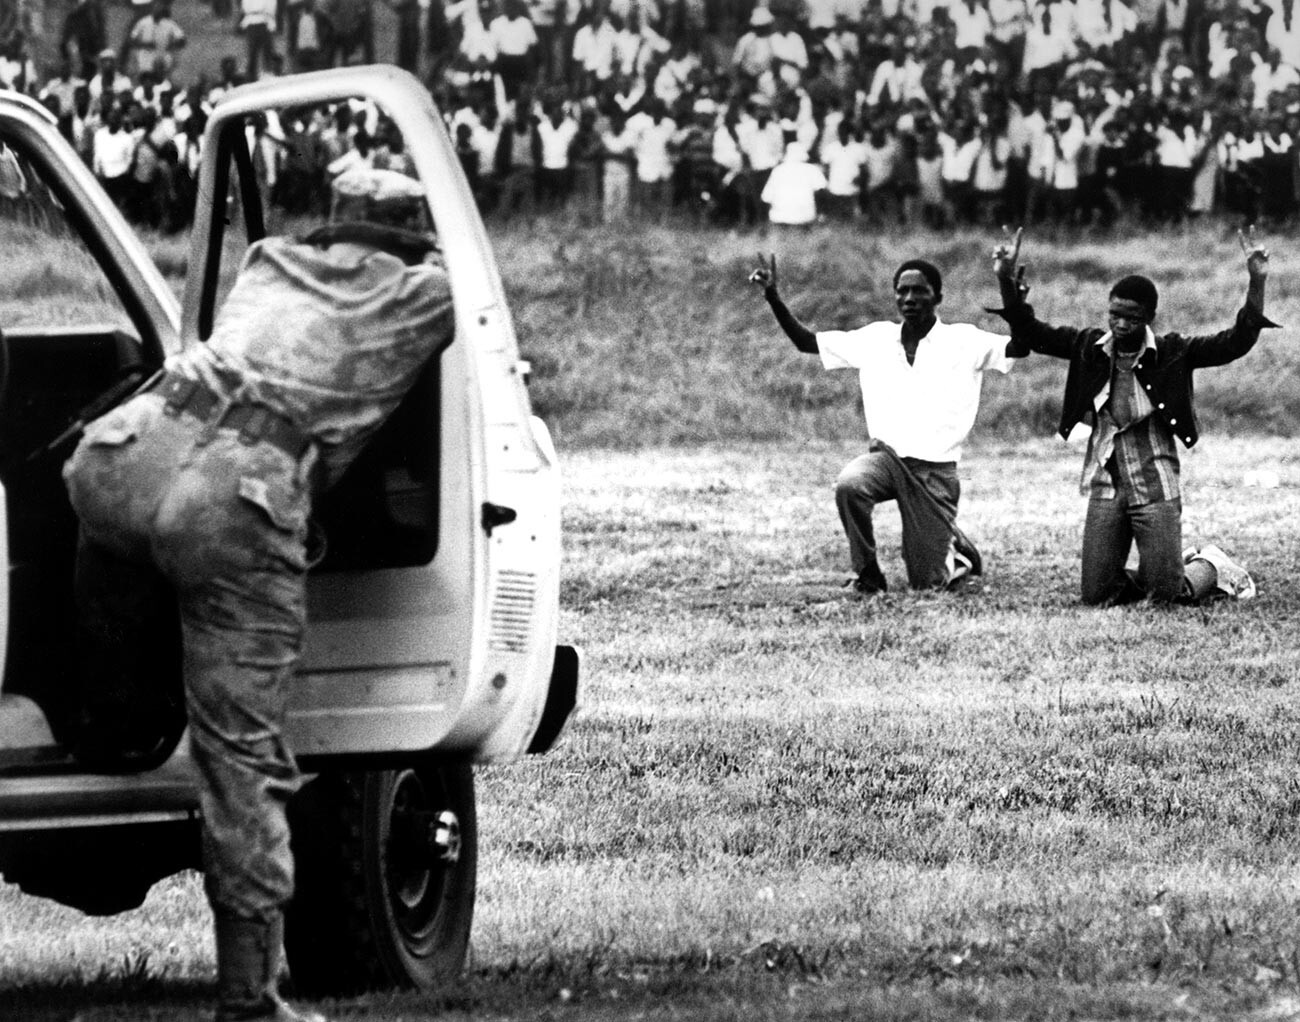 Jugendliche aus Soweto knien vor der Polizei und halten ihre Hände in die Luft, um das Friedenszeichen zu zeigen, am 16. Juni 1976 in Soweto, Südafrika.